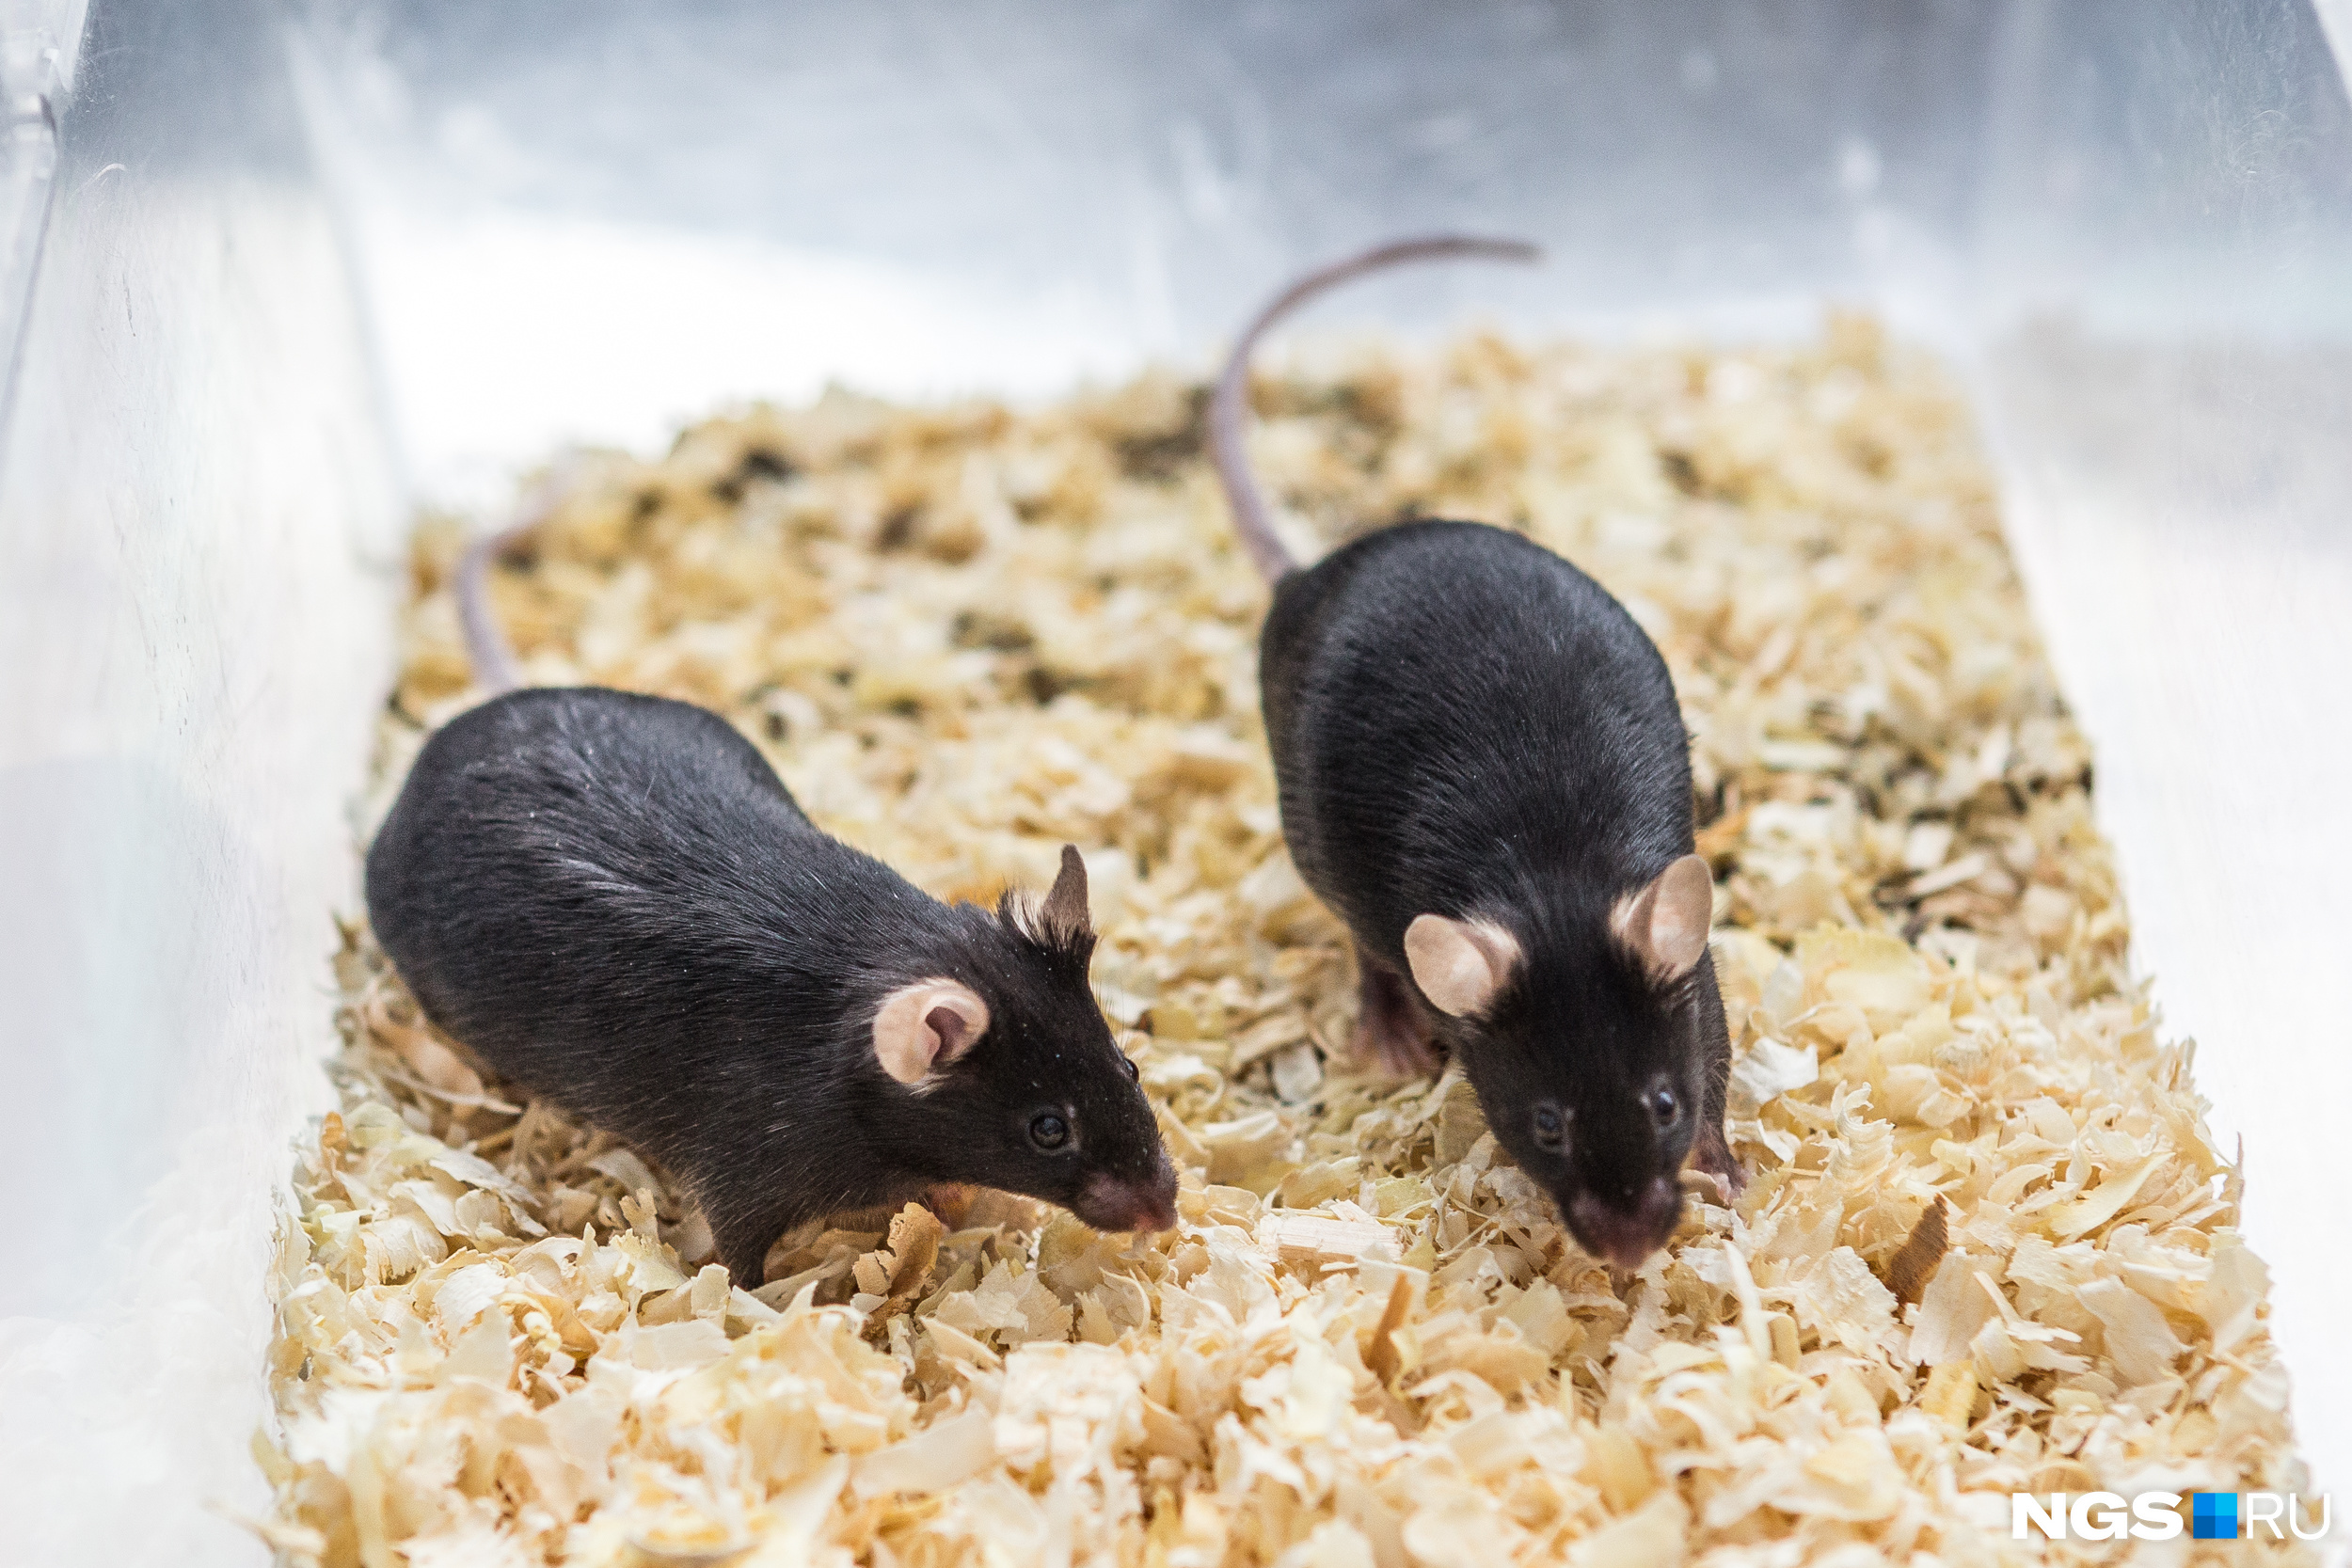 На чёрных мышах, как правило, изучают онкологические болезни. У этих блэков красивые округлые уши, как у Микки Мауса